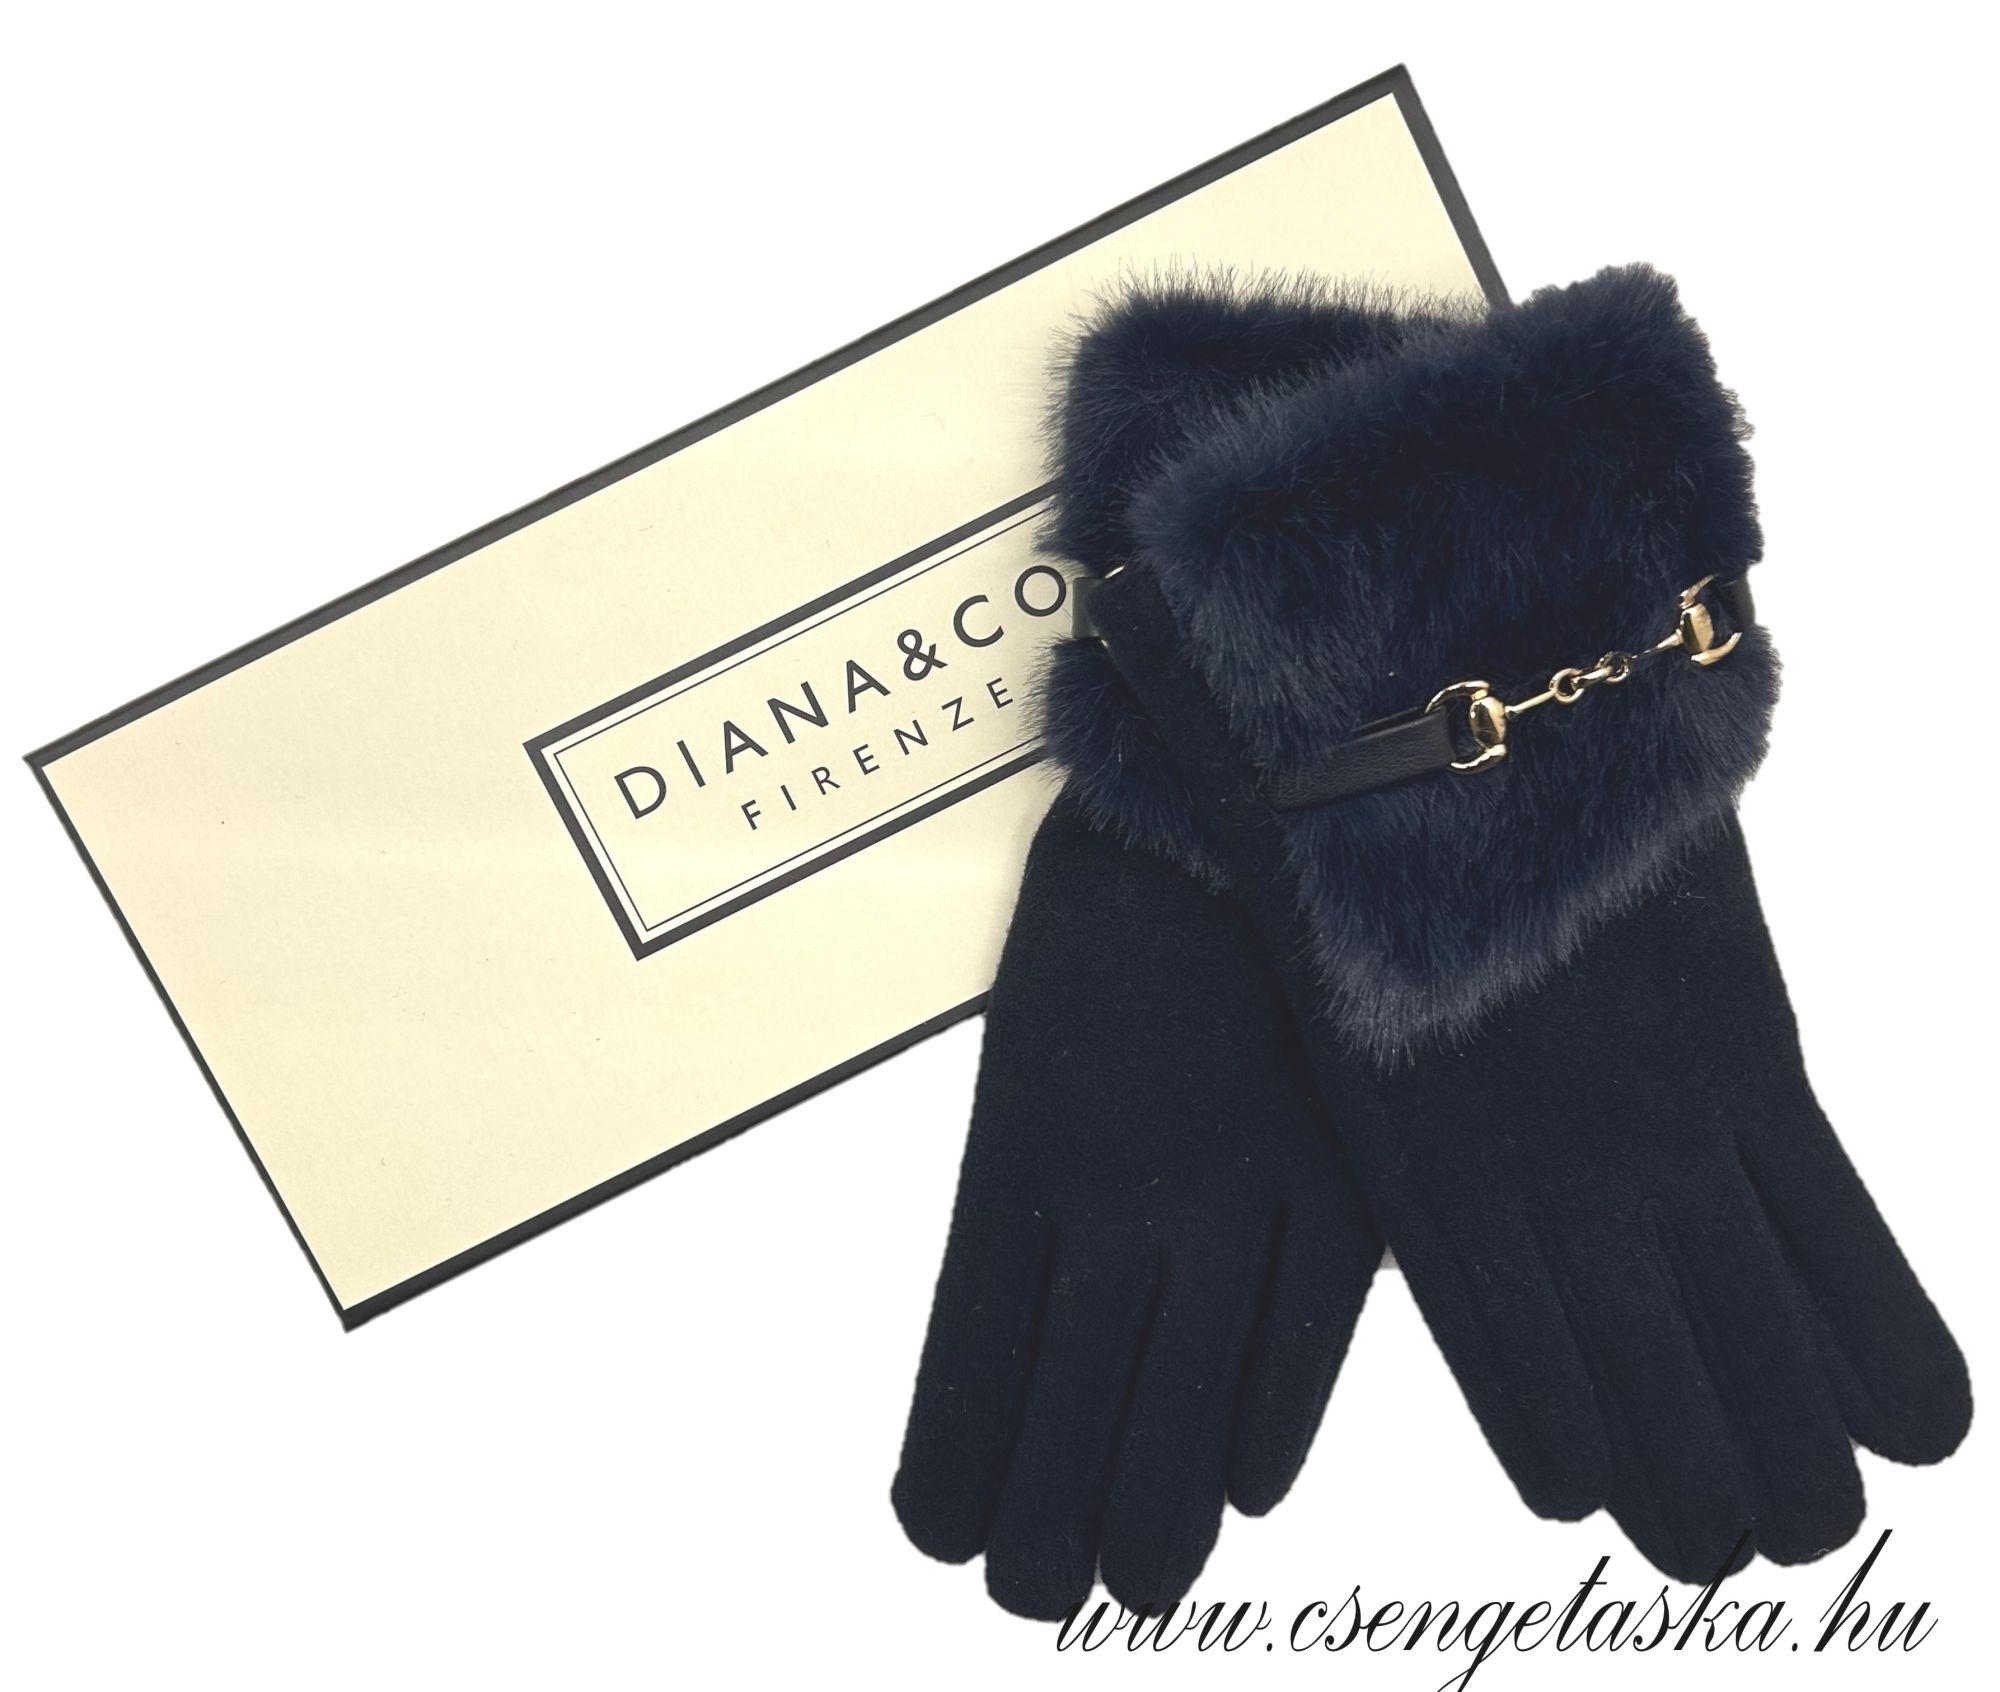 Diana&Co női kesztyű teal blue